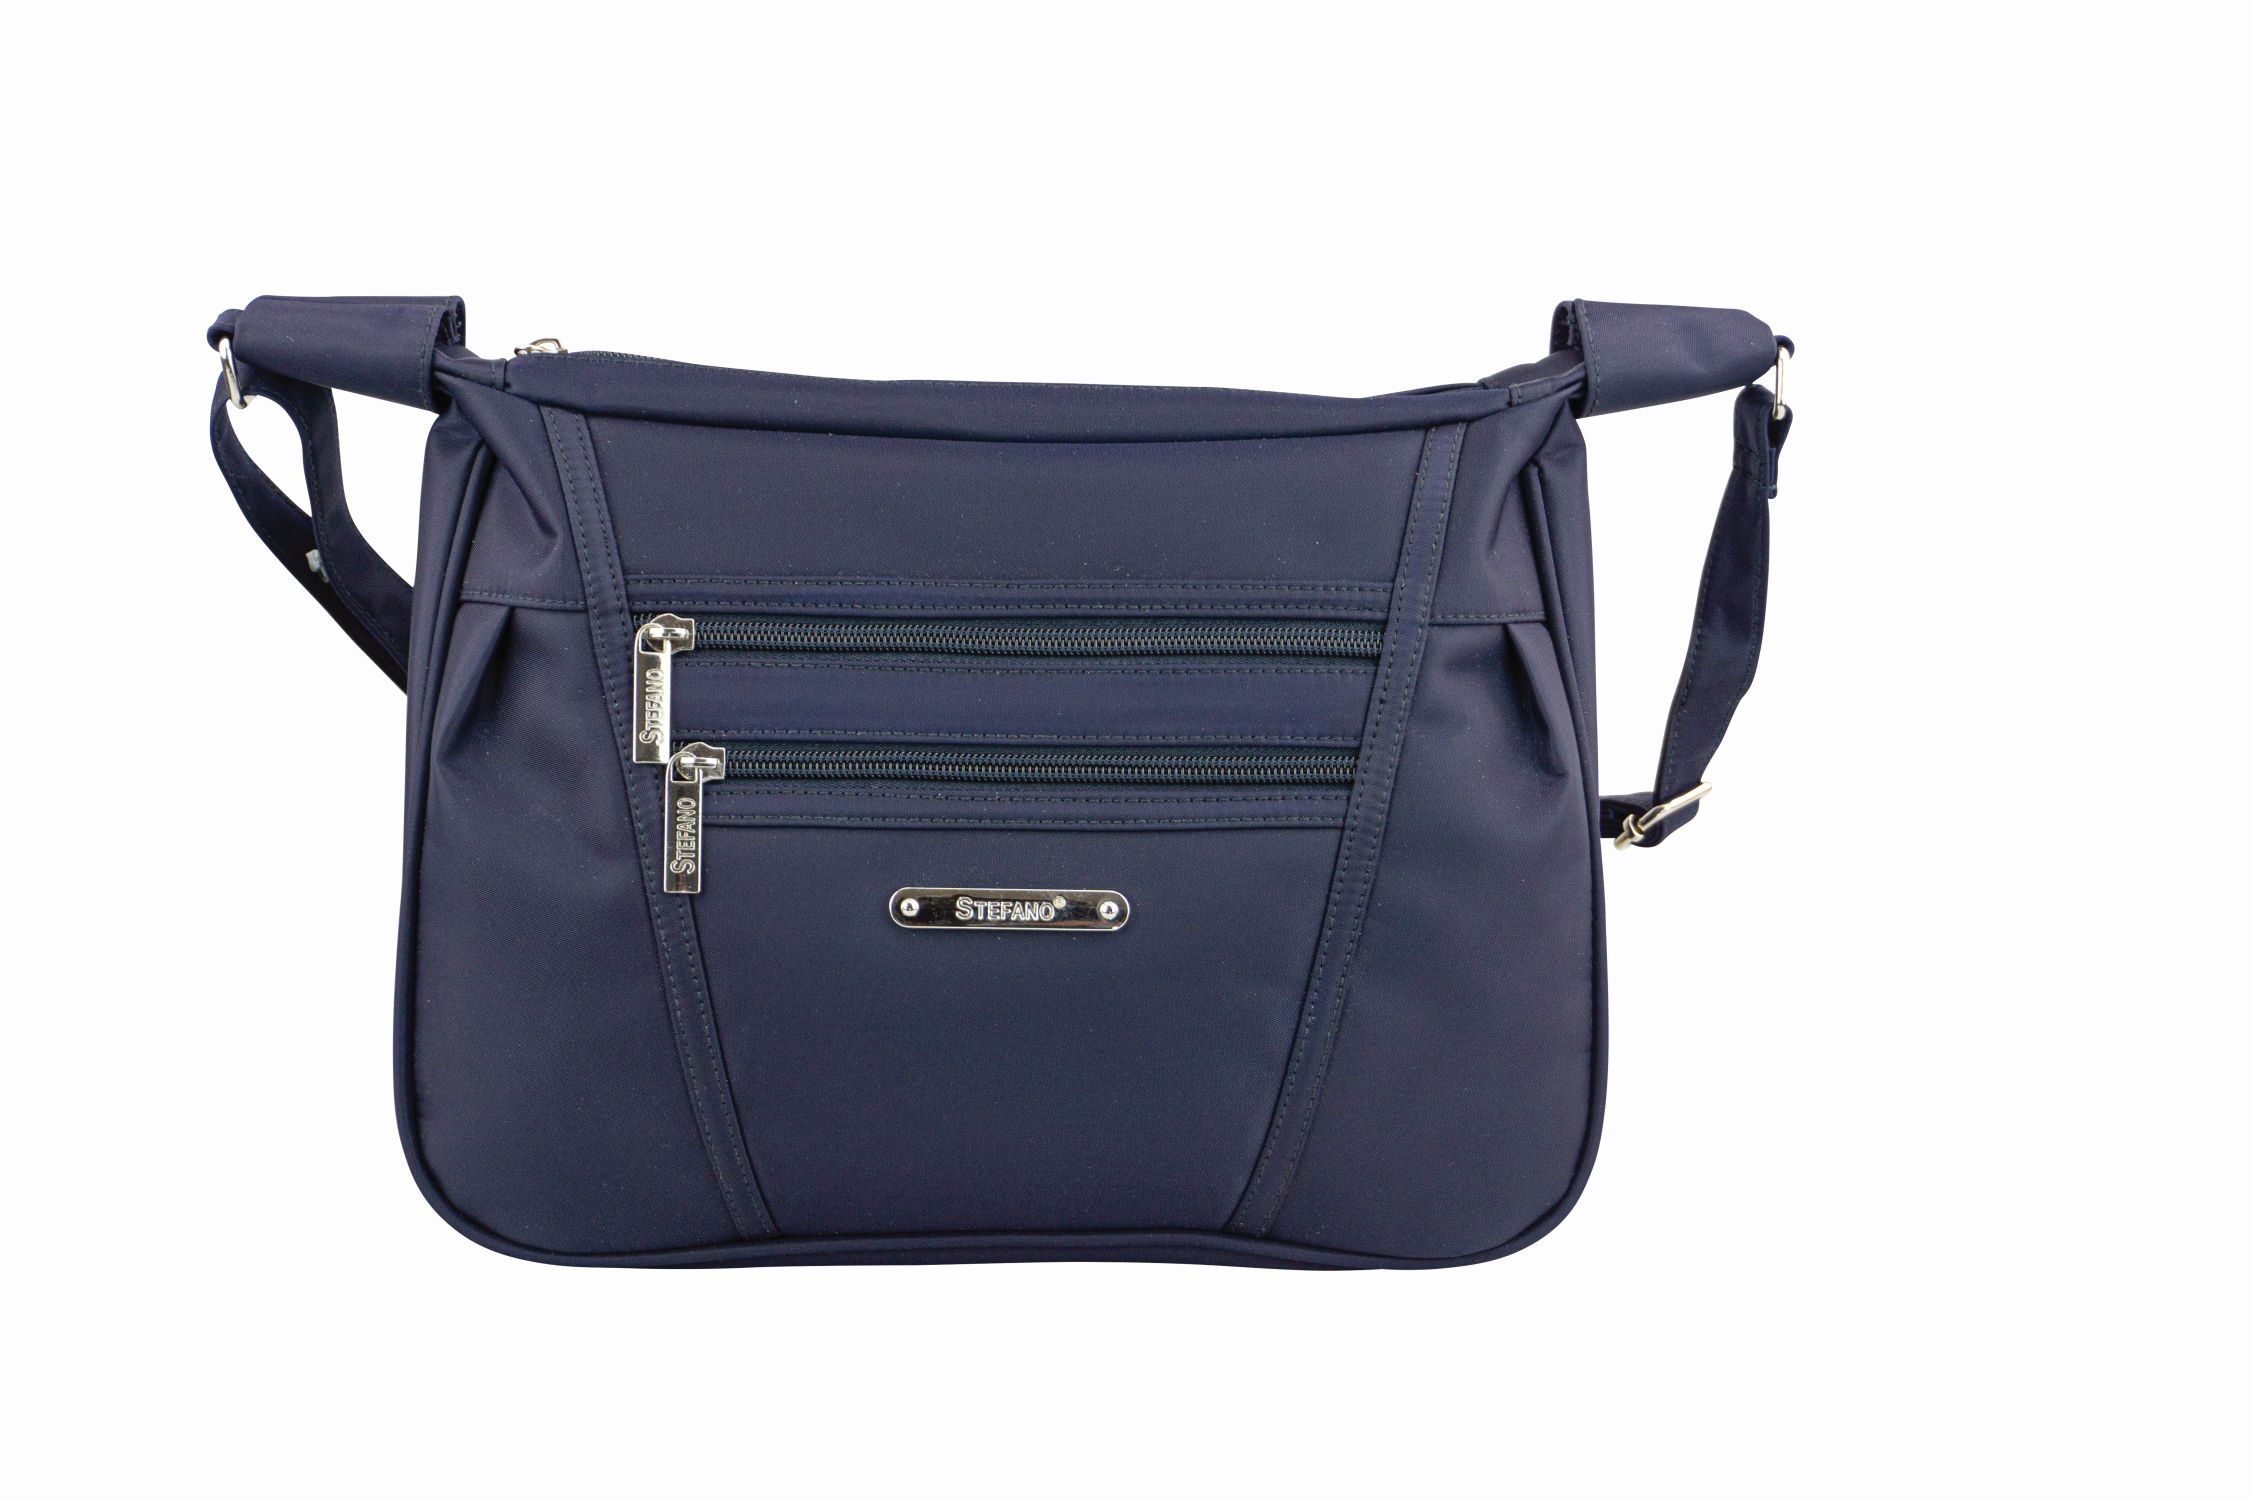 Damentasche Umhängetasche "Federleicht" von Stefano in blau - 918-134-65